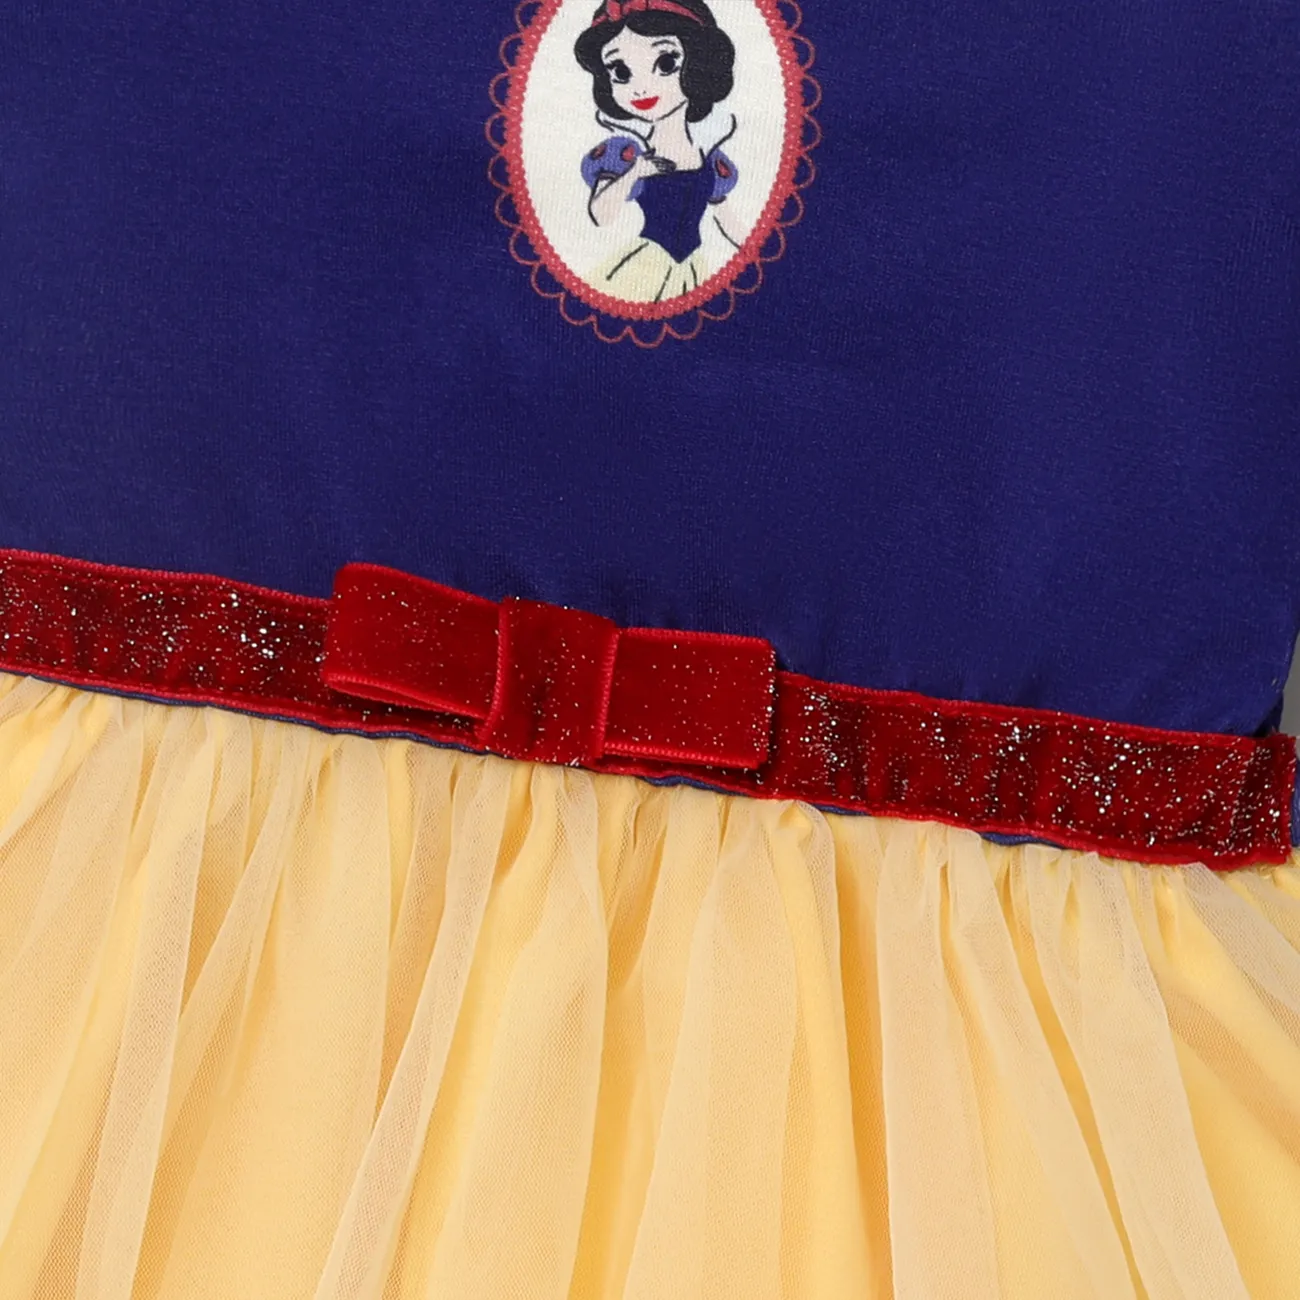 Disney Princess Baby/Toddler Girl Naia™ Character Print Cosplay Long-sleeve Dress Deep Blue big image 1